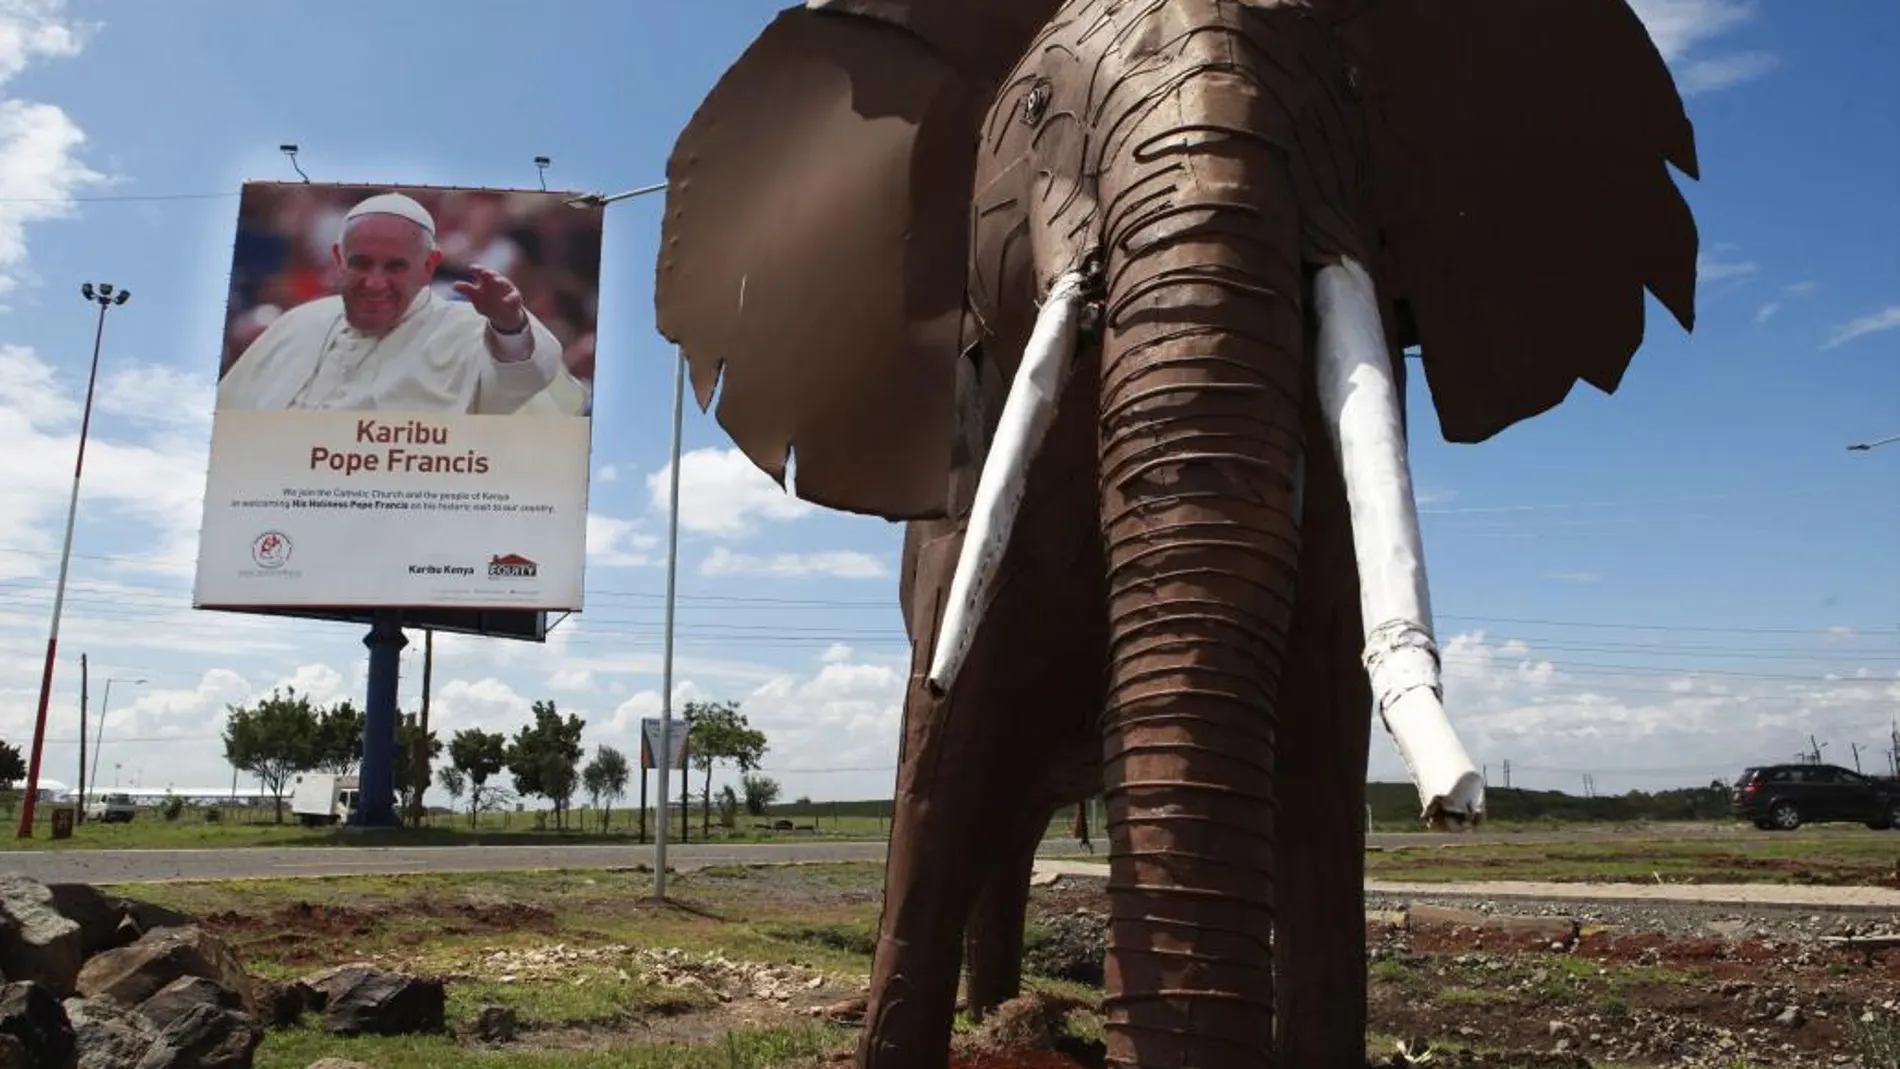 Un cartel da la bienvenida al papa Francisco junto a la escultura de un elefante en el aeropuerto internacional Jomo Kenyatta en Nairobi